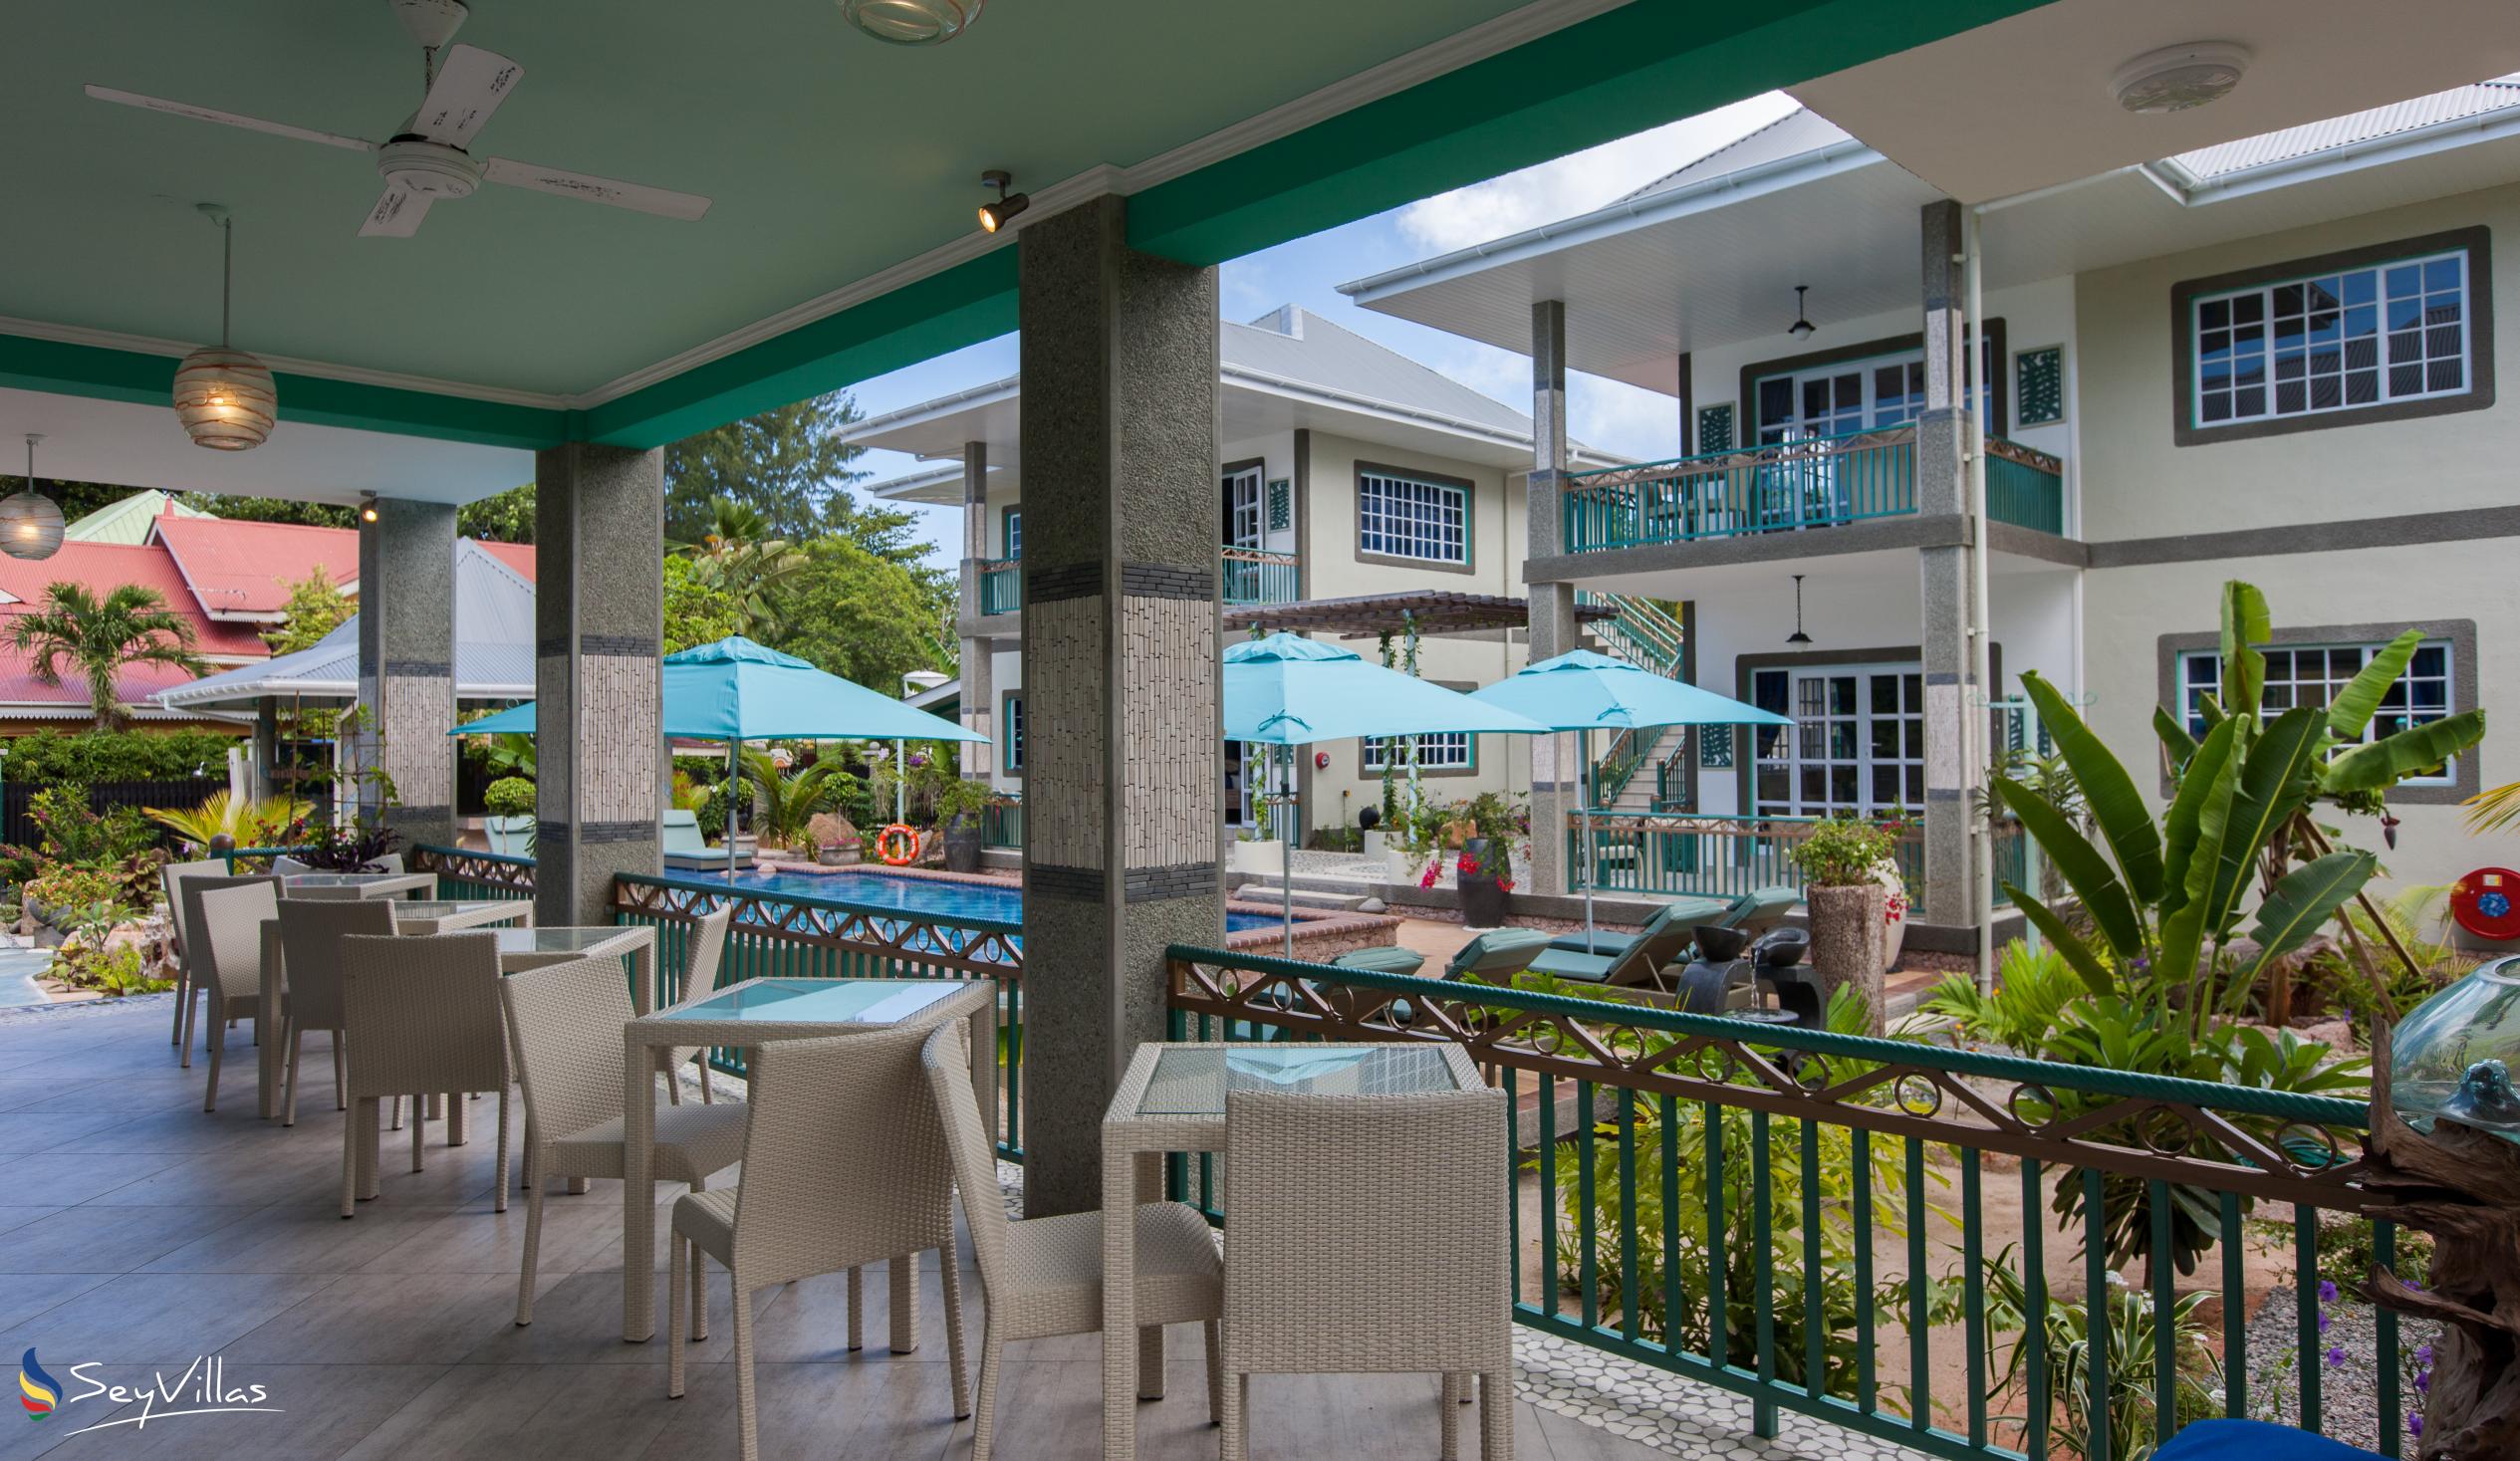 Foto 47: Villa Charme De L'ile - Appartamento Deluxe con vista piscina - La Digue (Seychelles)